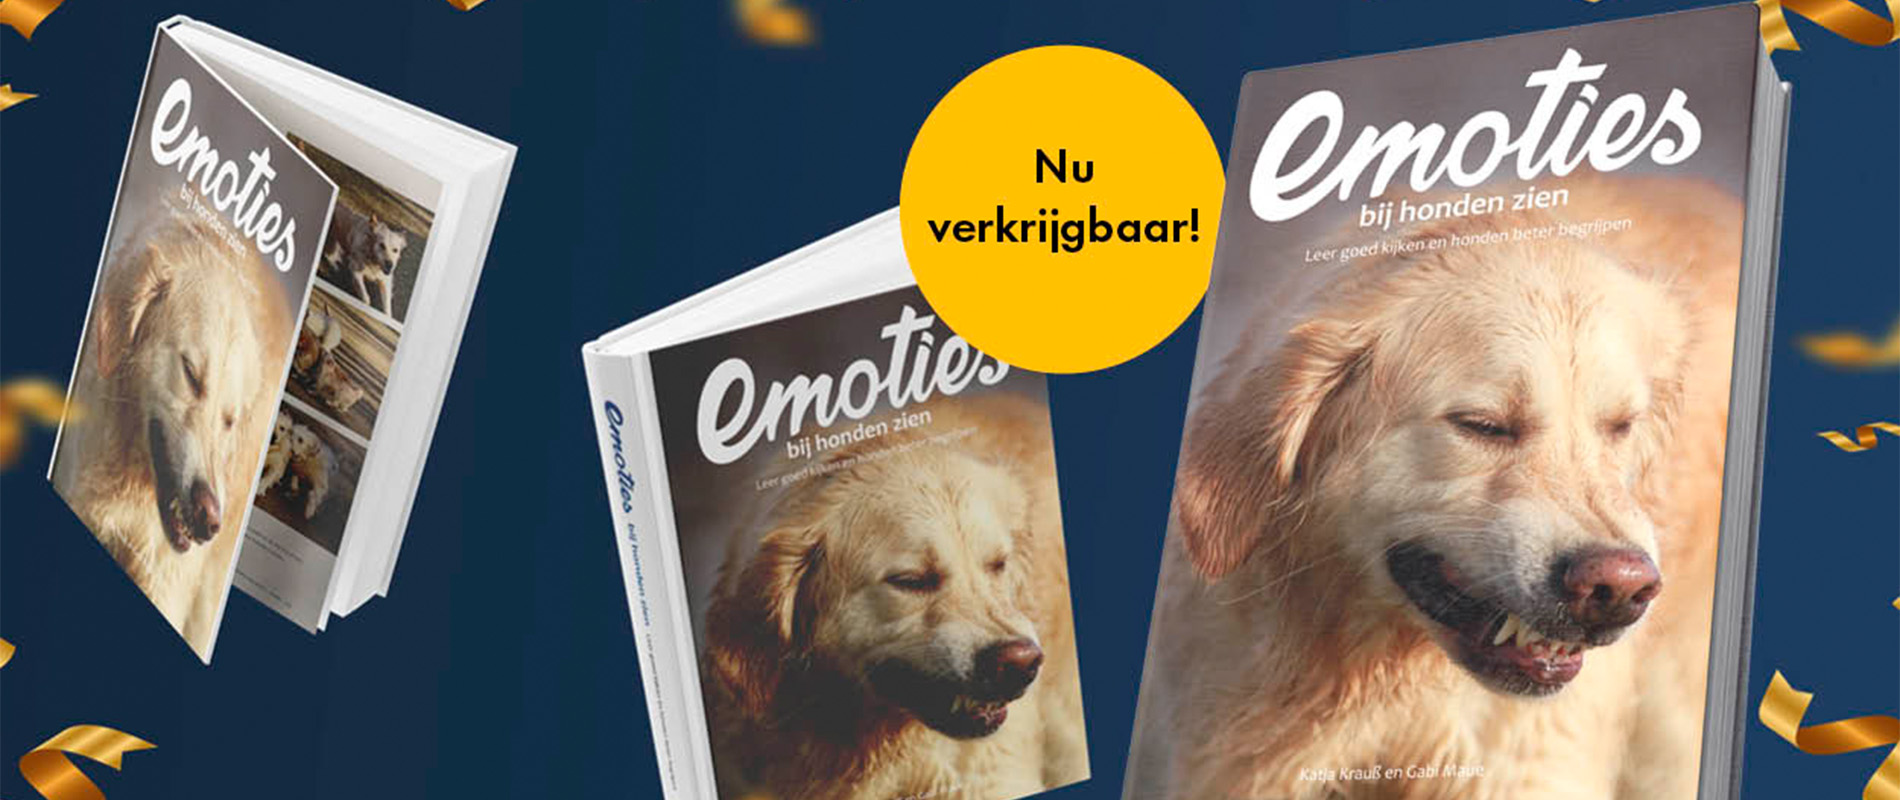 Het boek ‘Emoties bij honden zien’ is nu verkrijgbaar!